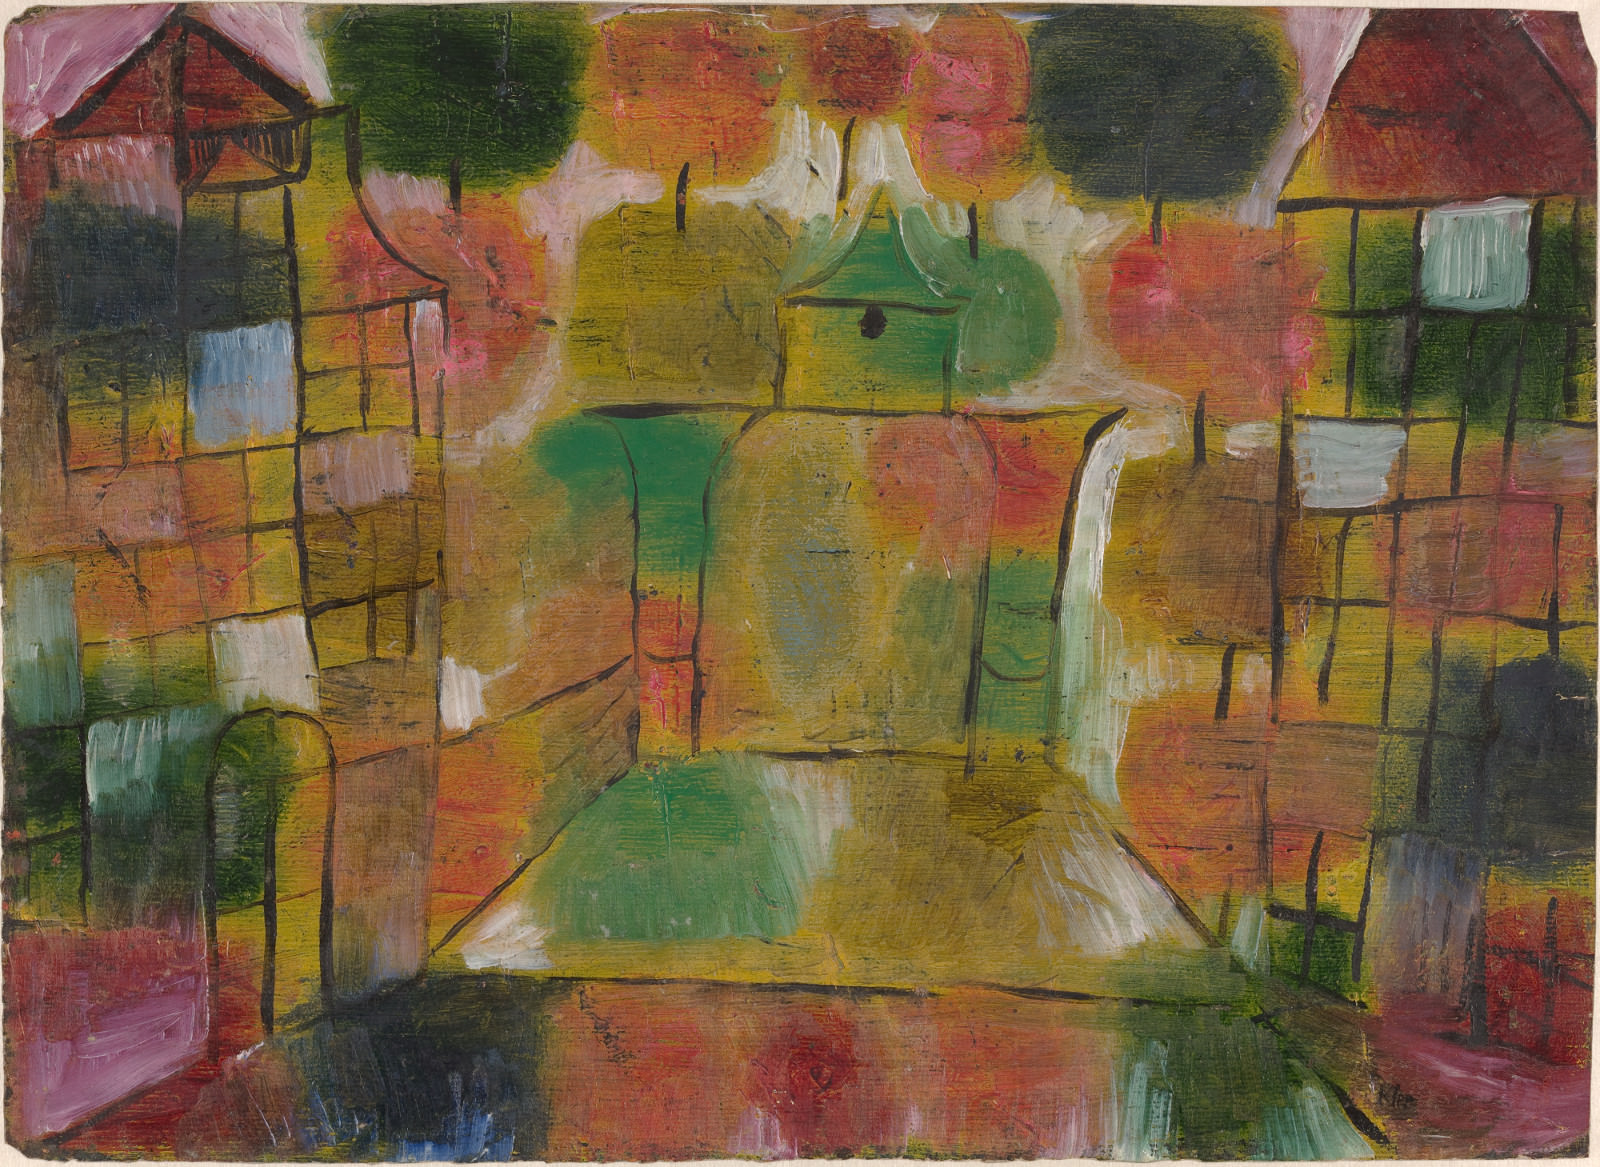 Figue. 10 - Paul Klee, arbre architecture - Ritmos, 1920, Huile sur papier, Générales: 27.9 x 38.3 cm (11 x 15 1/16 dans.). National Gallery of Art, Washington. Presente de Benjamin et Lillian Hertzberg.